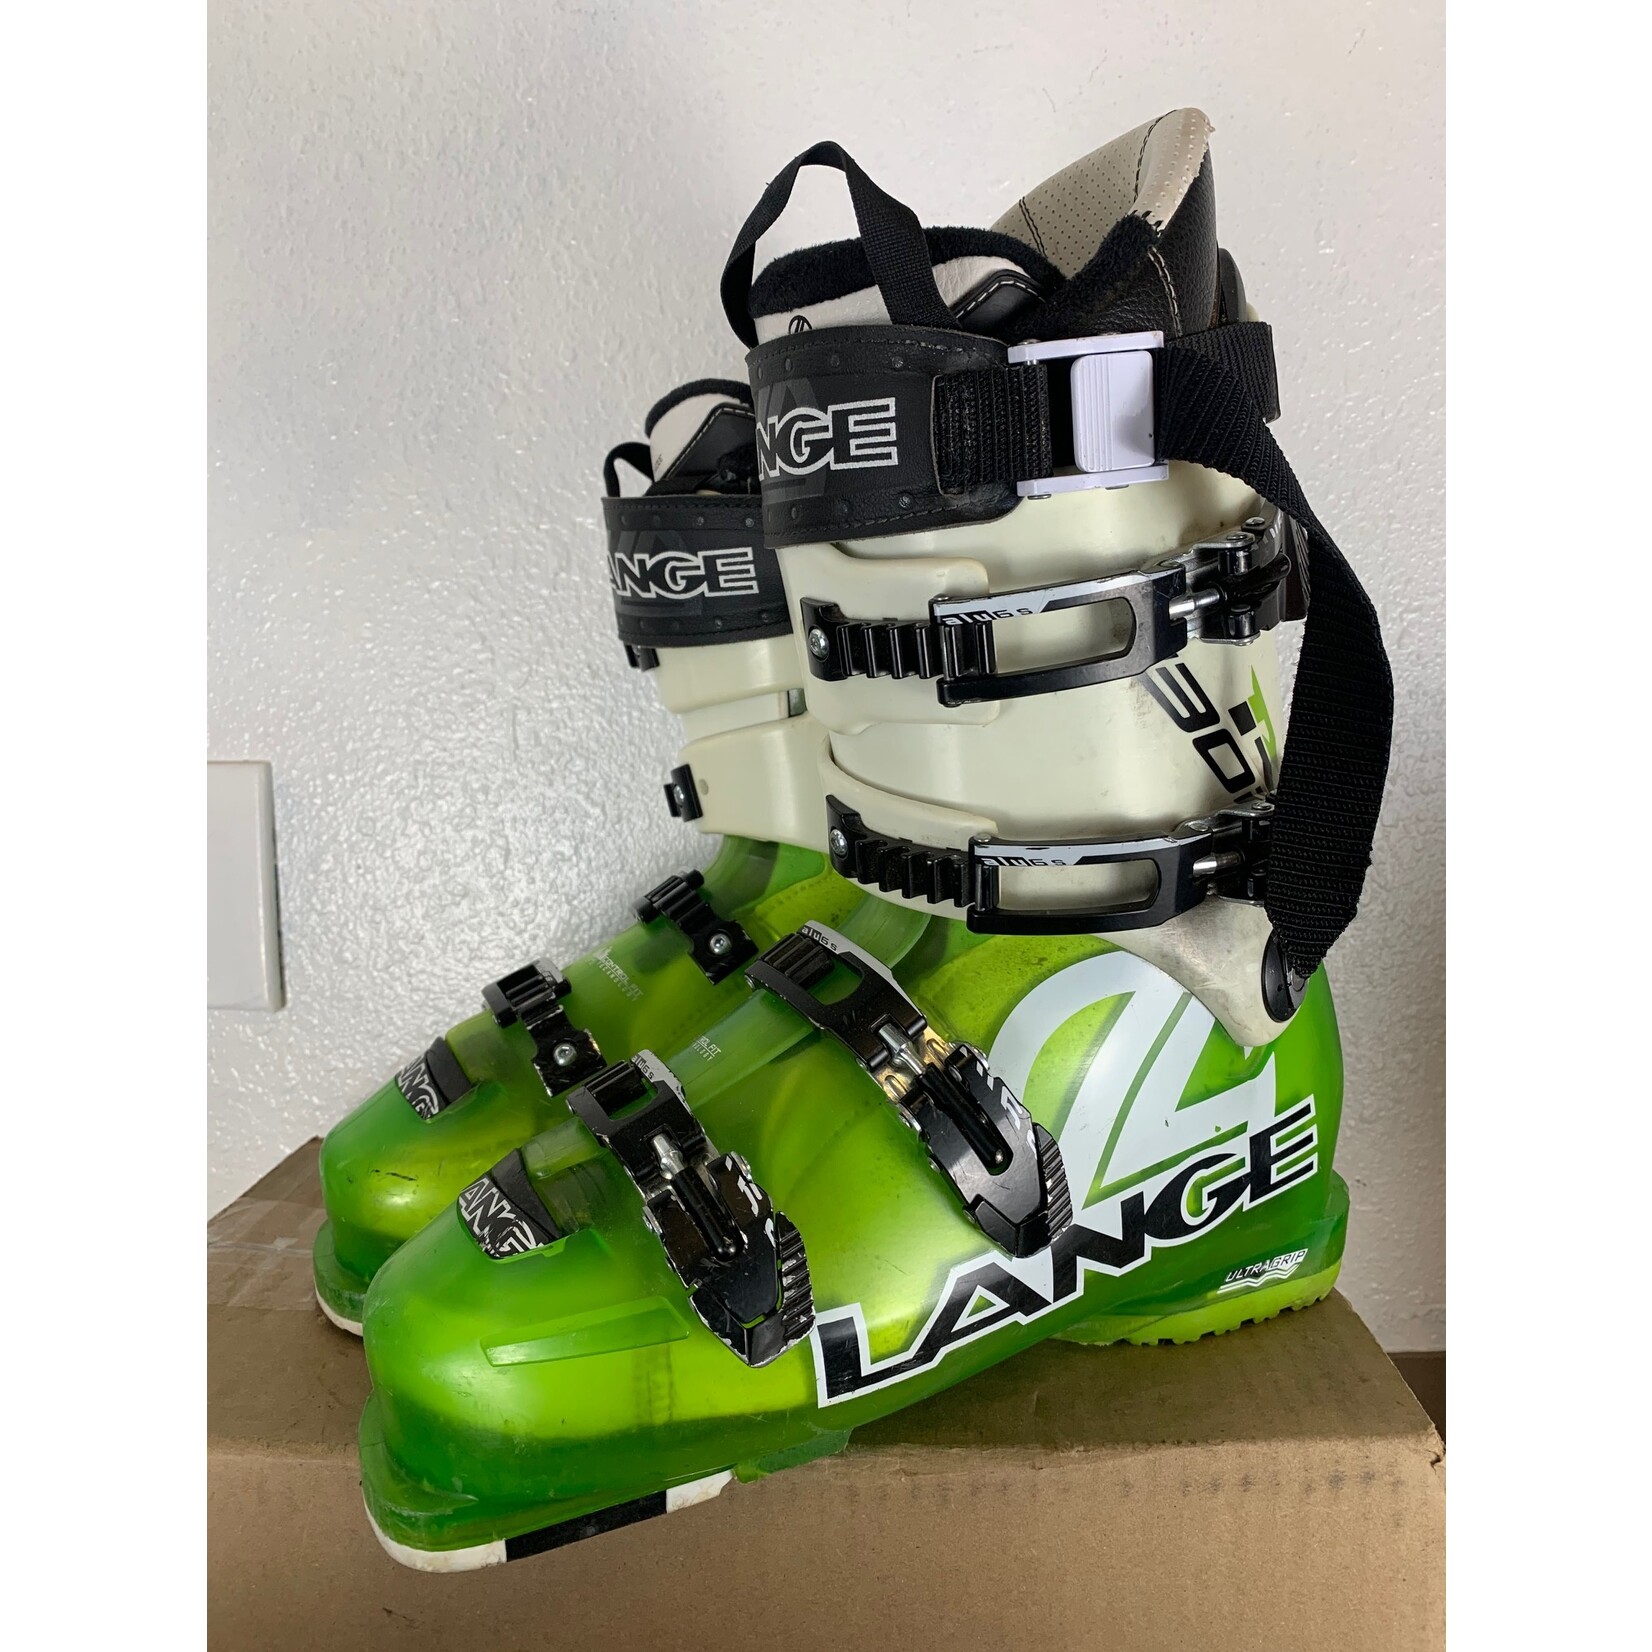 Lange Lange RX 130 Ski Boots, Size 27/27.5